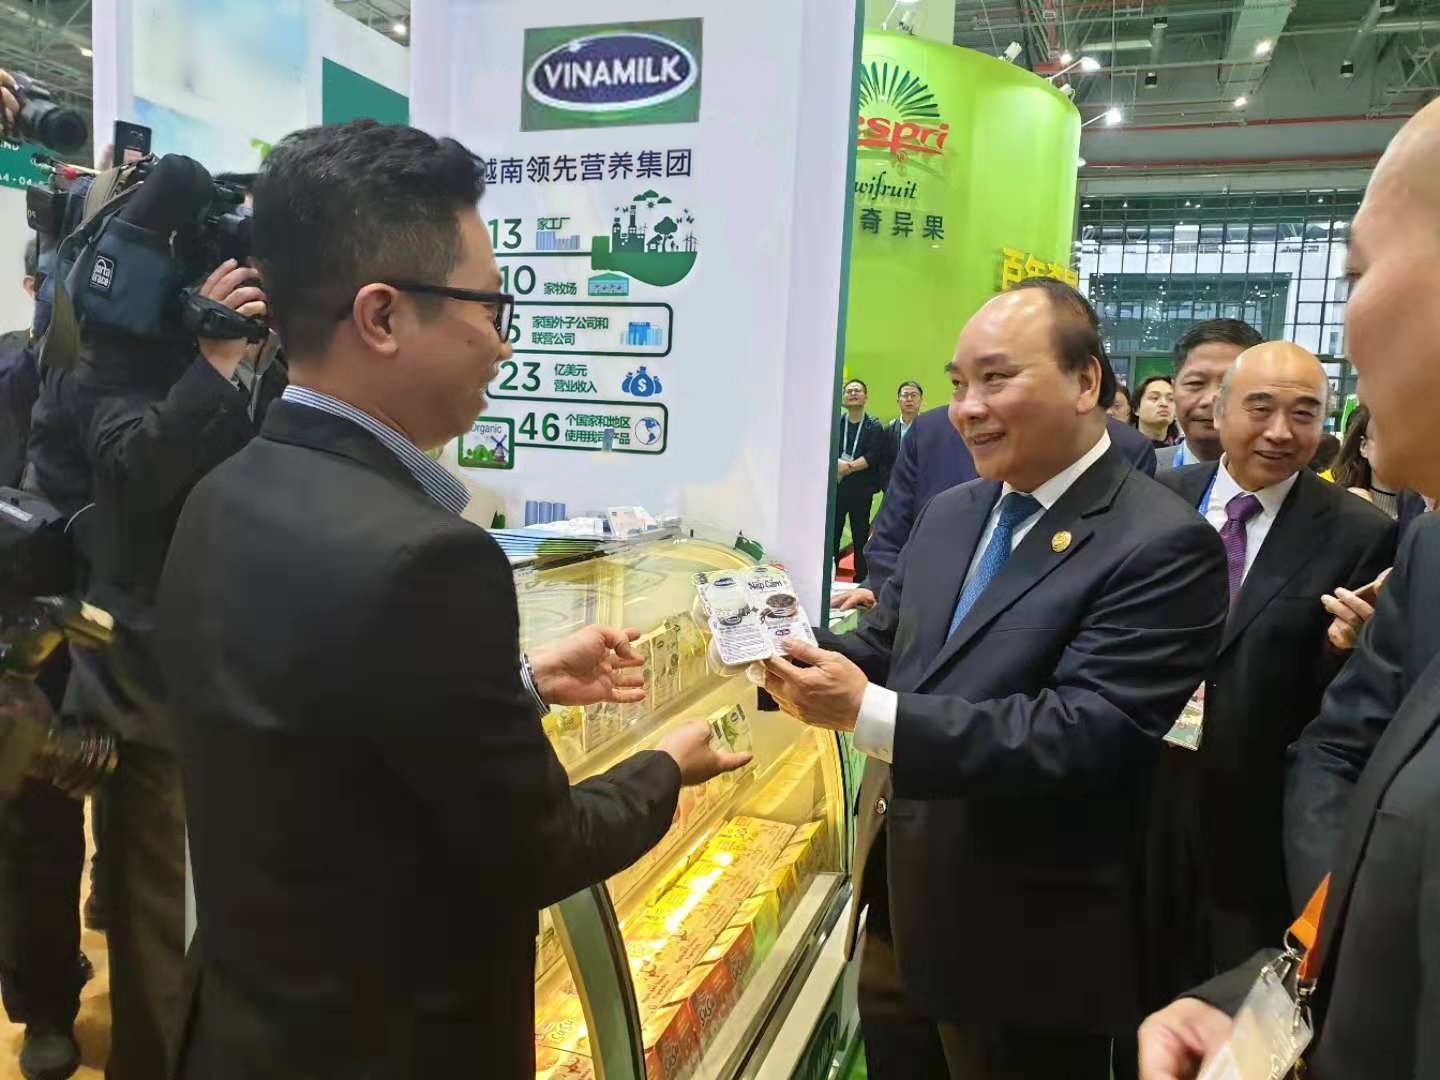 Sản phẩm sữa của Vinamilk được người tiêu dùng Trung Quốc rất ưu chuộng tại CIIE 2018